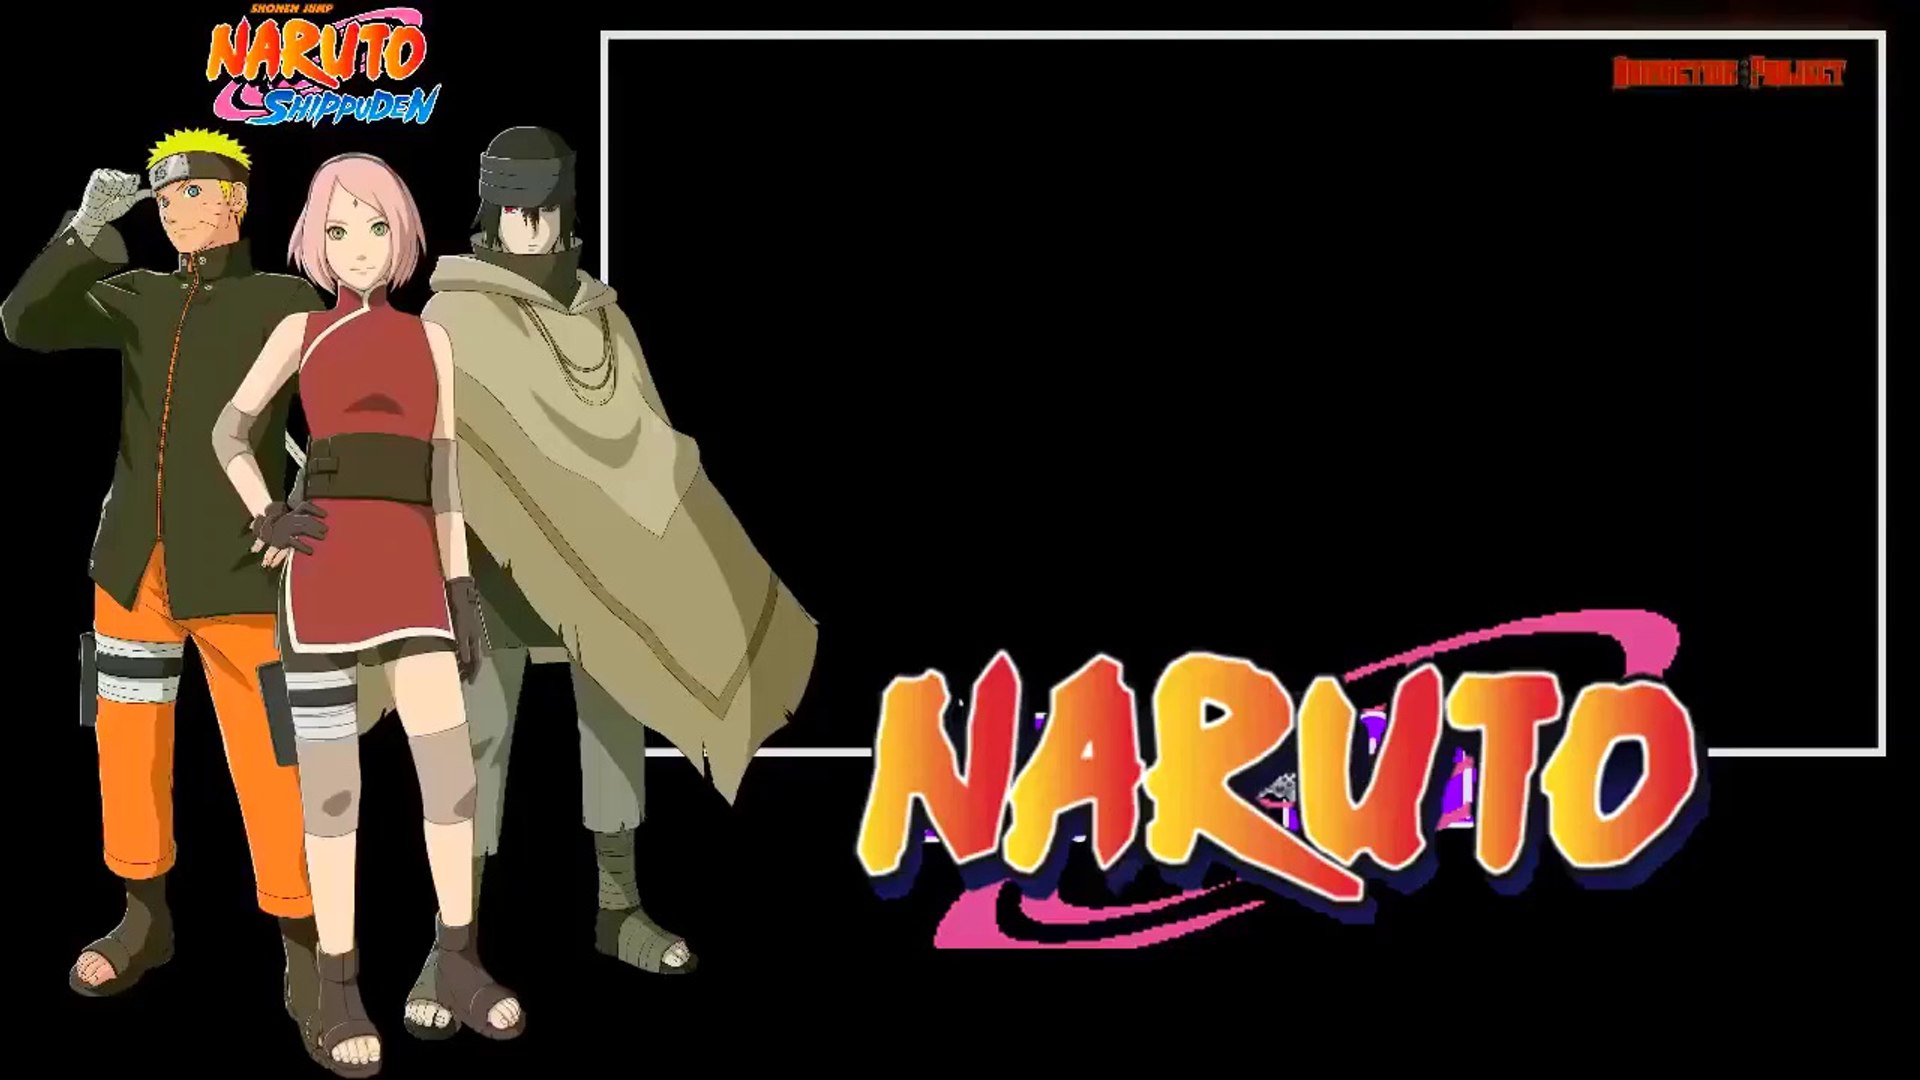 Naruto Shippuden 1ª Temporada #Ep 001 (Dublado PT - PT)  Ep 001 De Volta  para Casa. Alguém passa pelos portões. E ele está mais velho, é um renovado  Naruto que volta